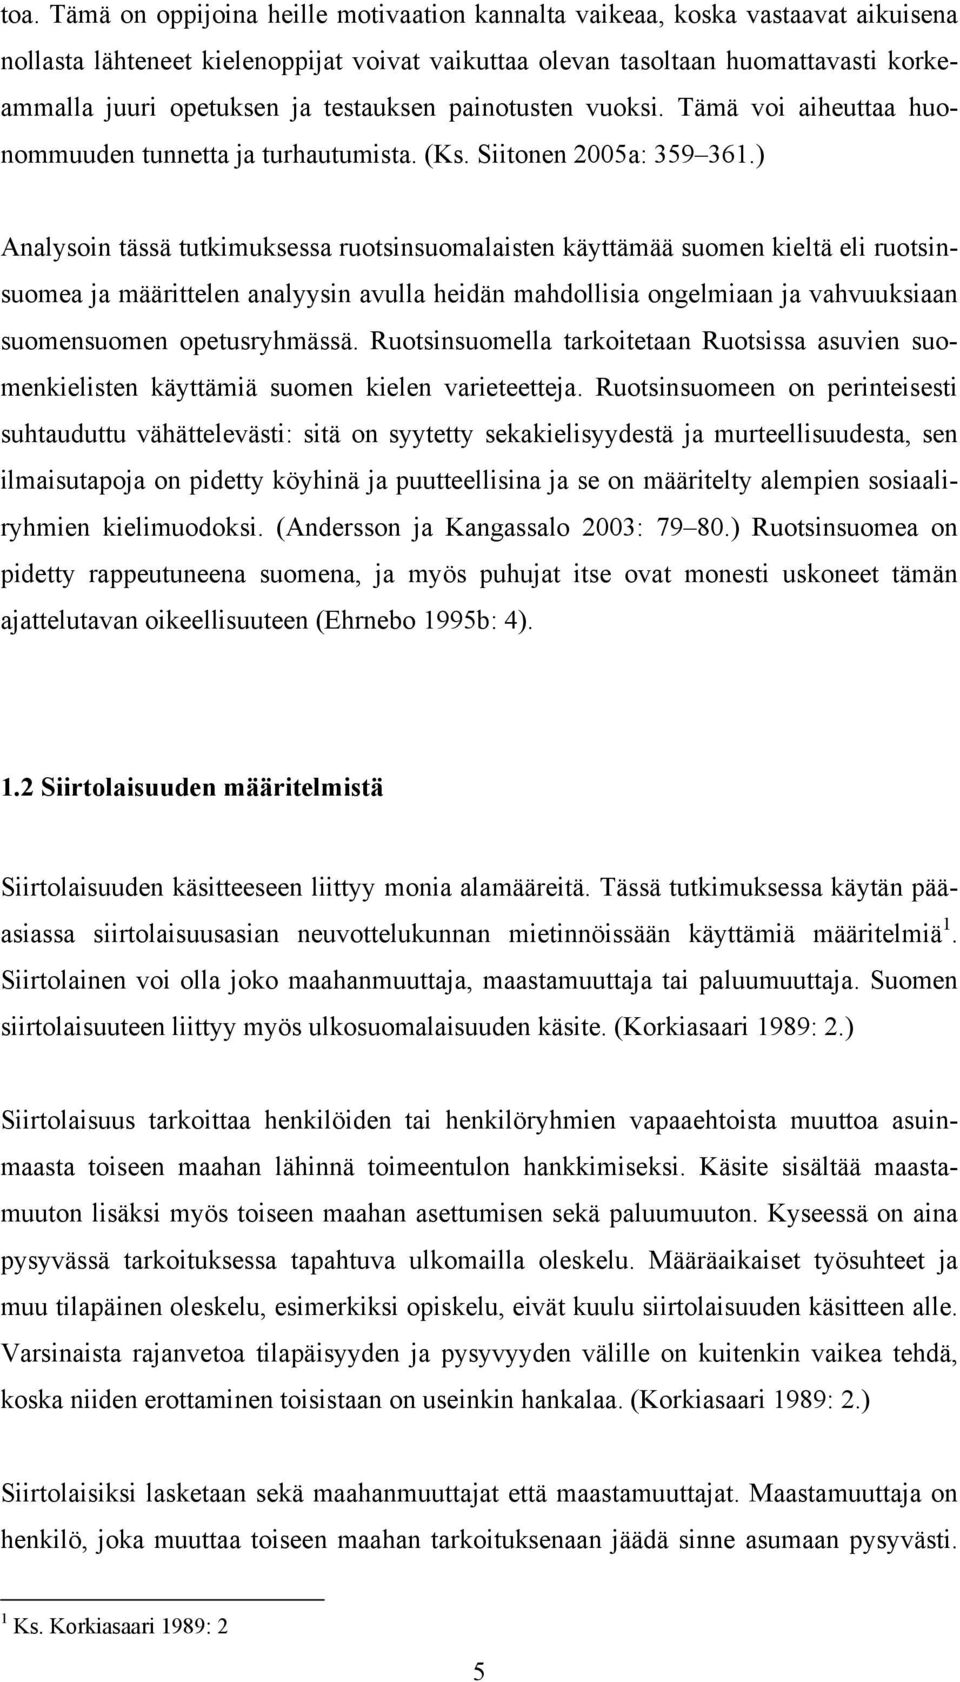 ) Analysoin tässä tutkimuksessa ruotsinsuomalaisten käyttämää suomen kieltä eli ruotsinsuomea ja määrittelen analyysin avulla heidän mahdollisia ongelmiaan ja vahvuuksiaan suomensuomen opetusryhmässä.